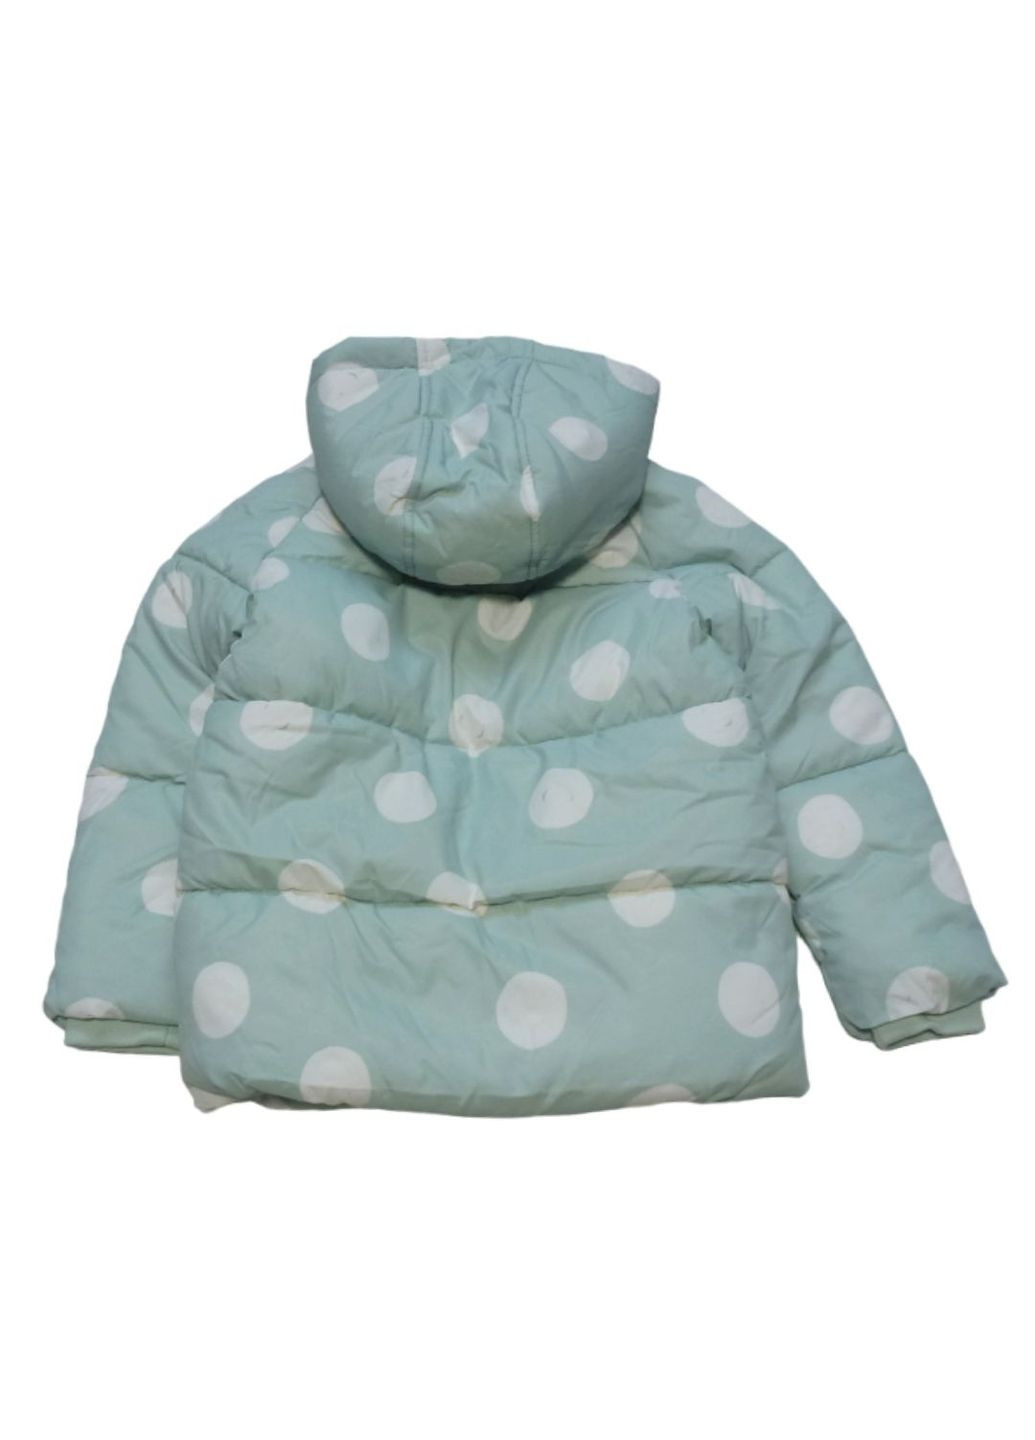 Мятная зимняя куртка зимняя для девочки, мятная в горох, 116-122 см, 6-7 л George